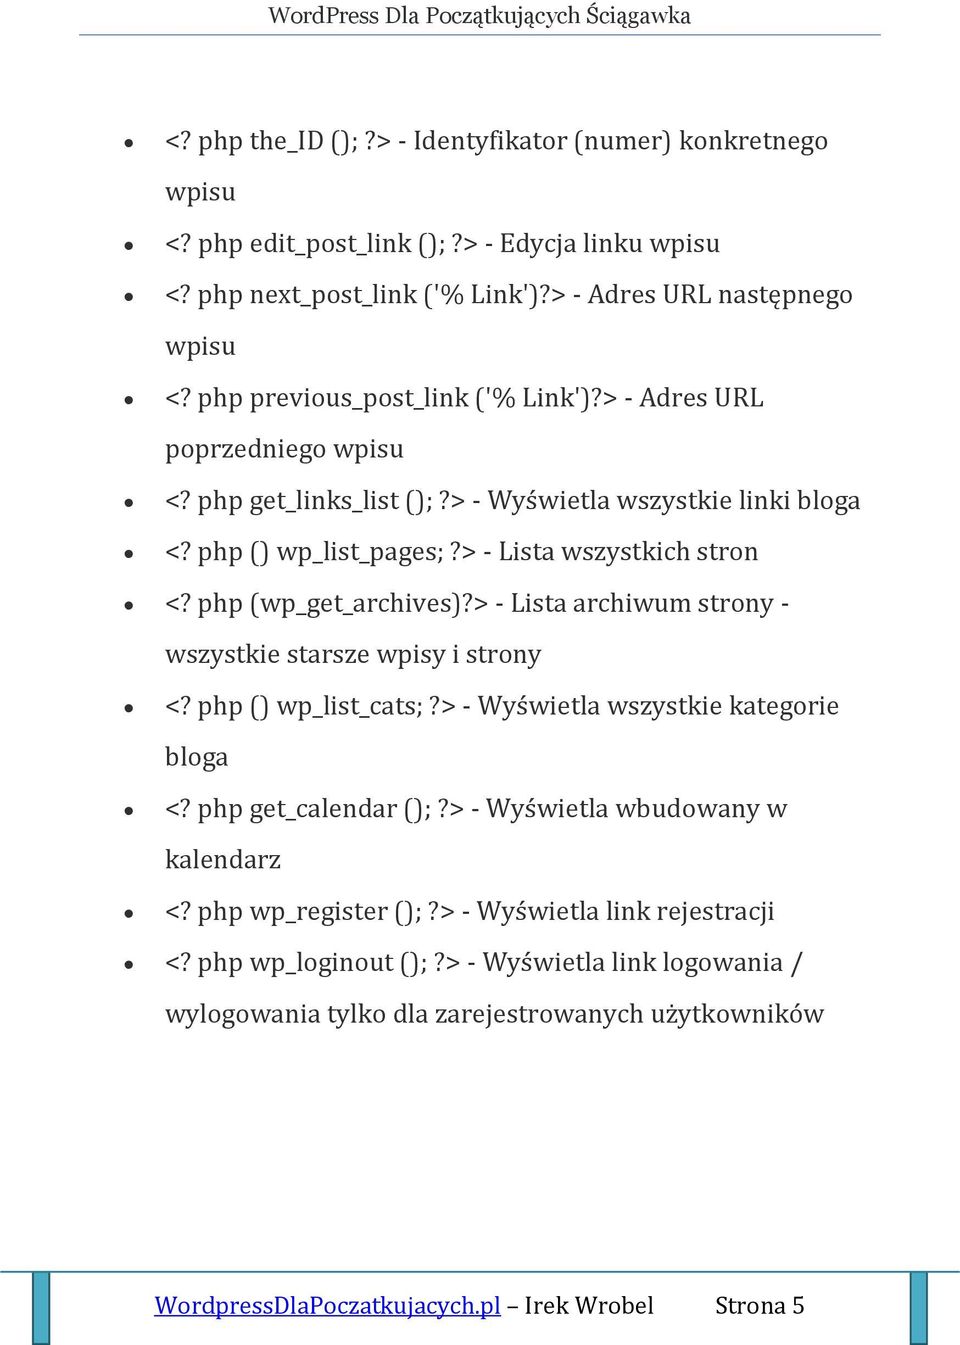 php (wp_get_archives)?> - Lista archiwum strony - wszystkie starsze wpisy i strony <? php () wp_list_cats;?> - Wyświetla wszystkie kategorie bloga <? php get_calendar ();?